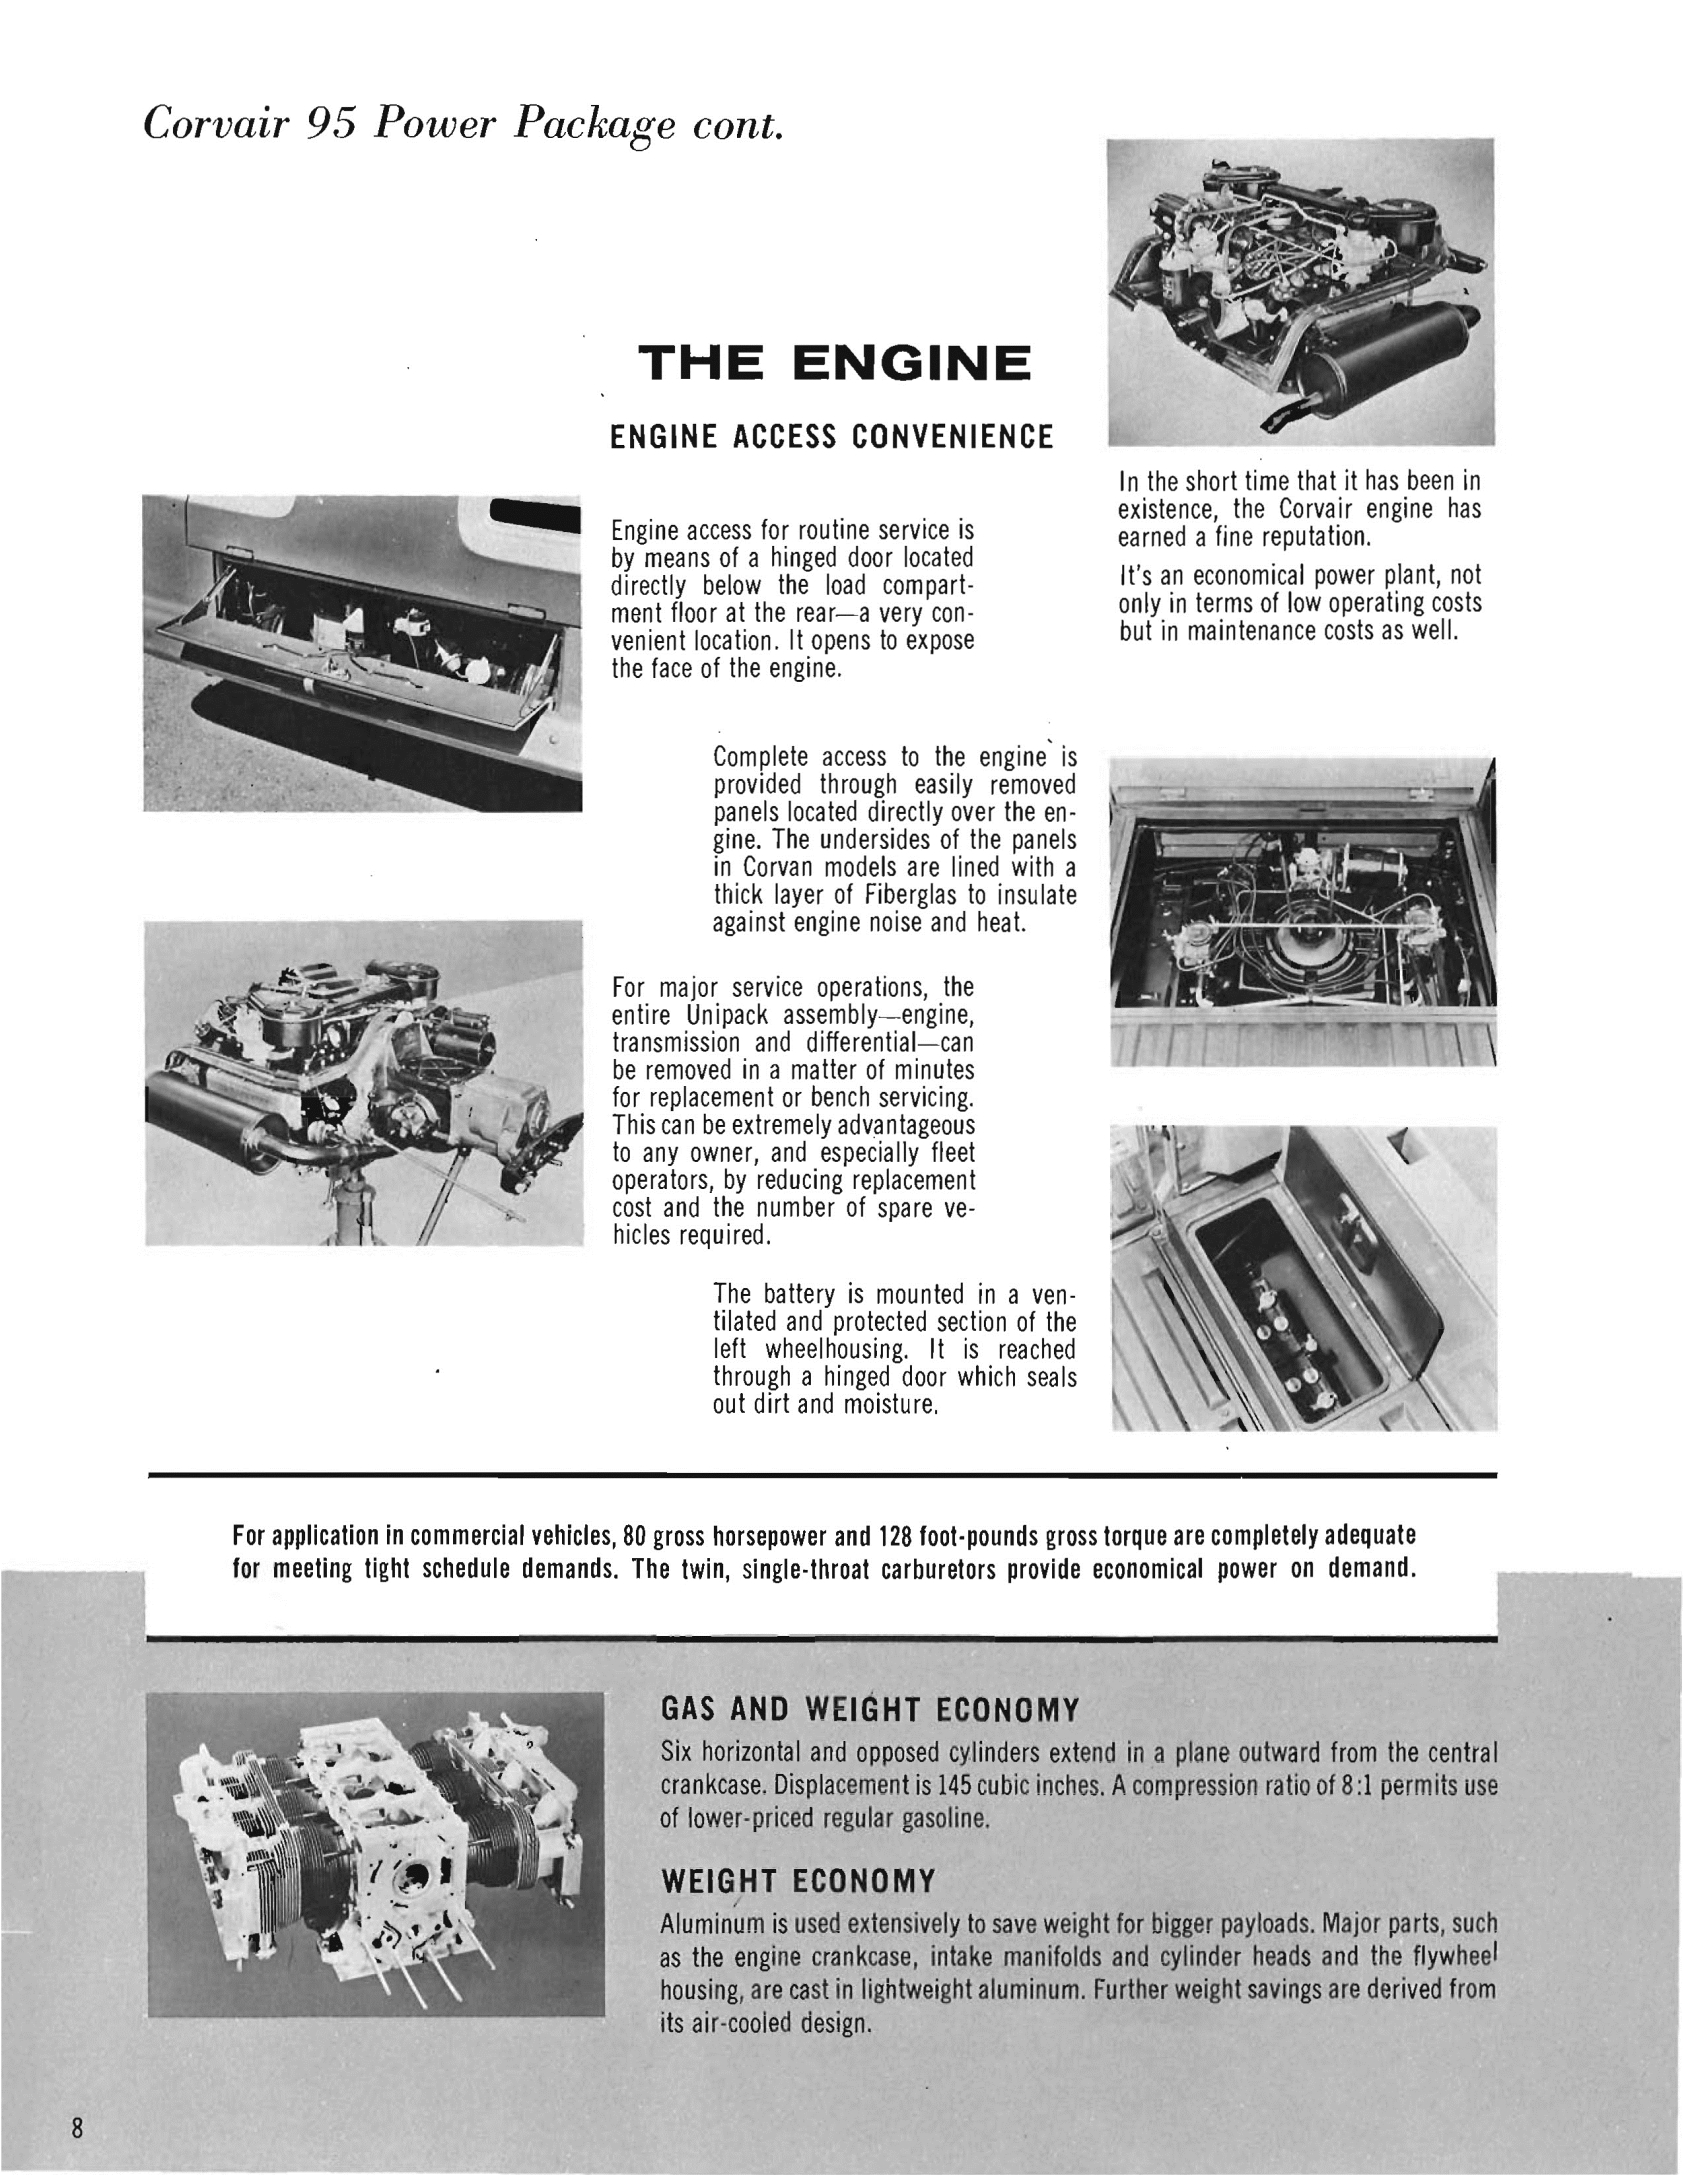 1961_Chevrolet_Trucks_Booklet-08